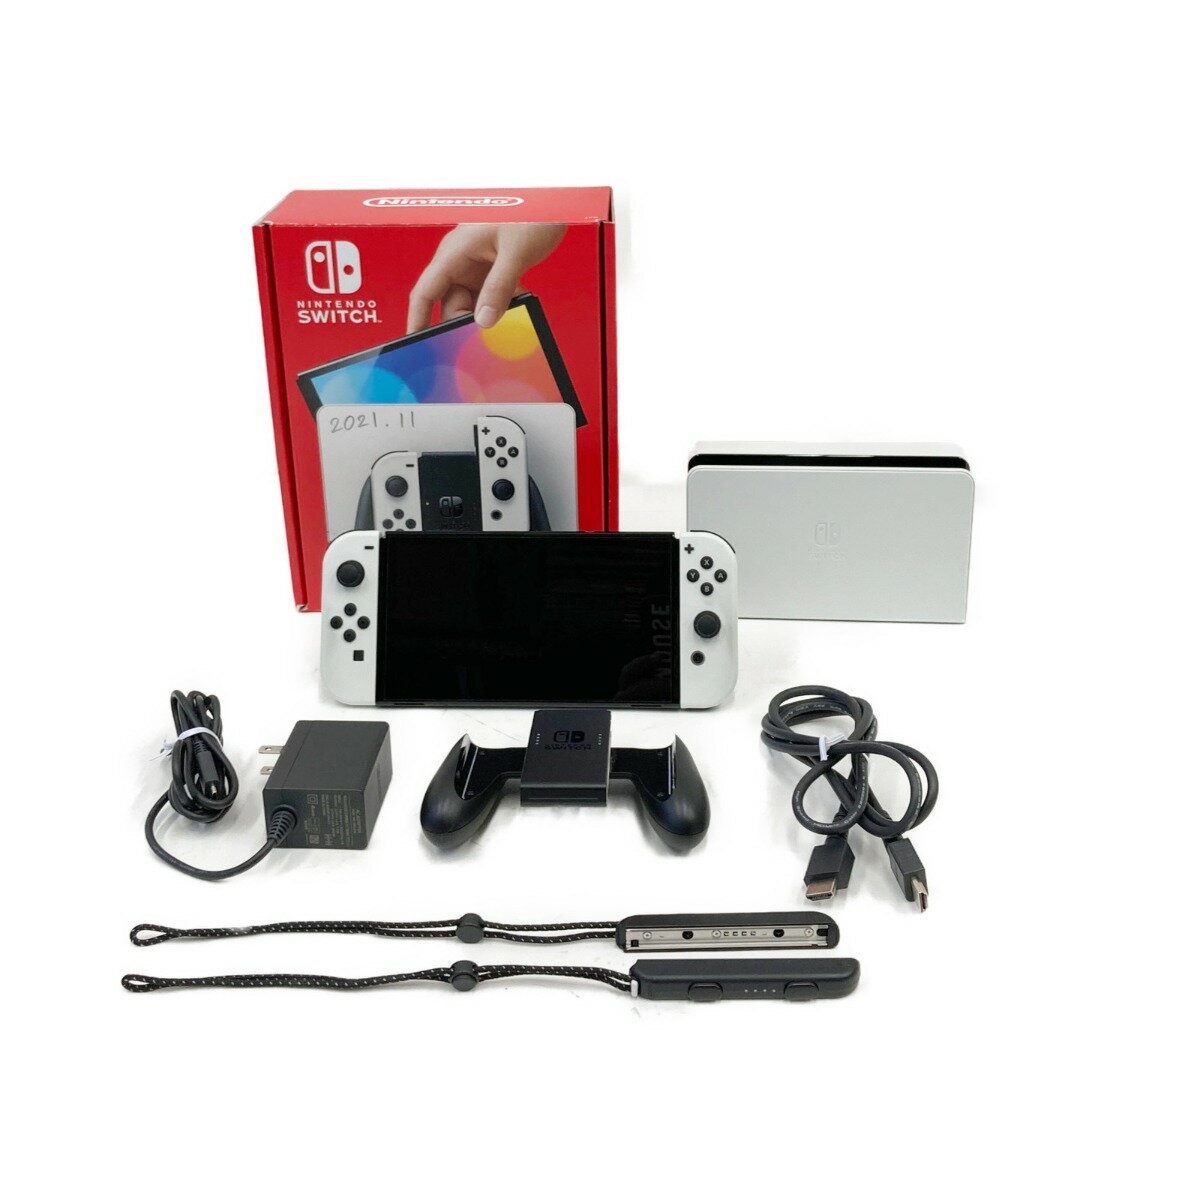 〇〇【中古】Nintendo ニンテンドウ Nintendo Switch 有機ELモデル HEG-001 現状渡し Cランク